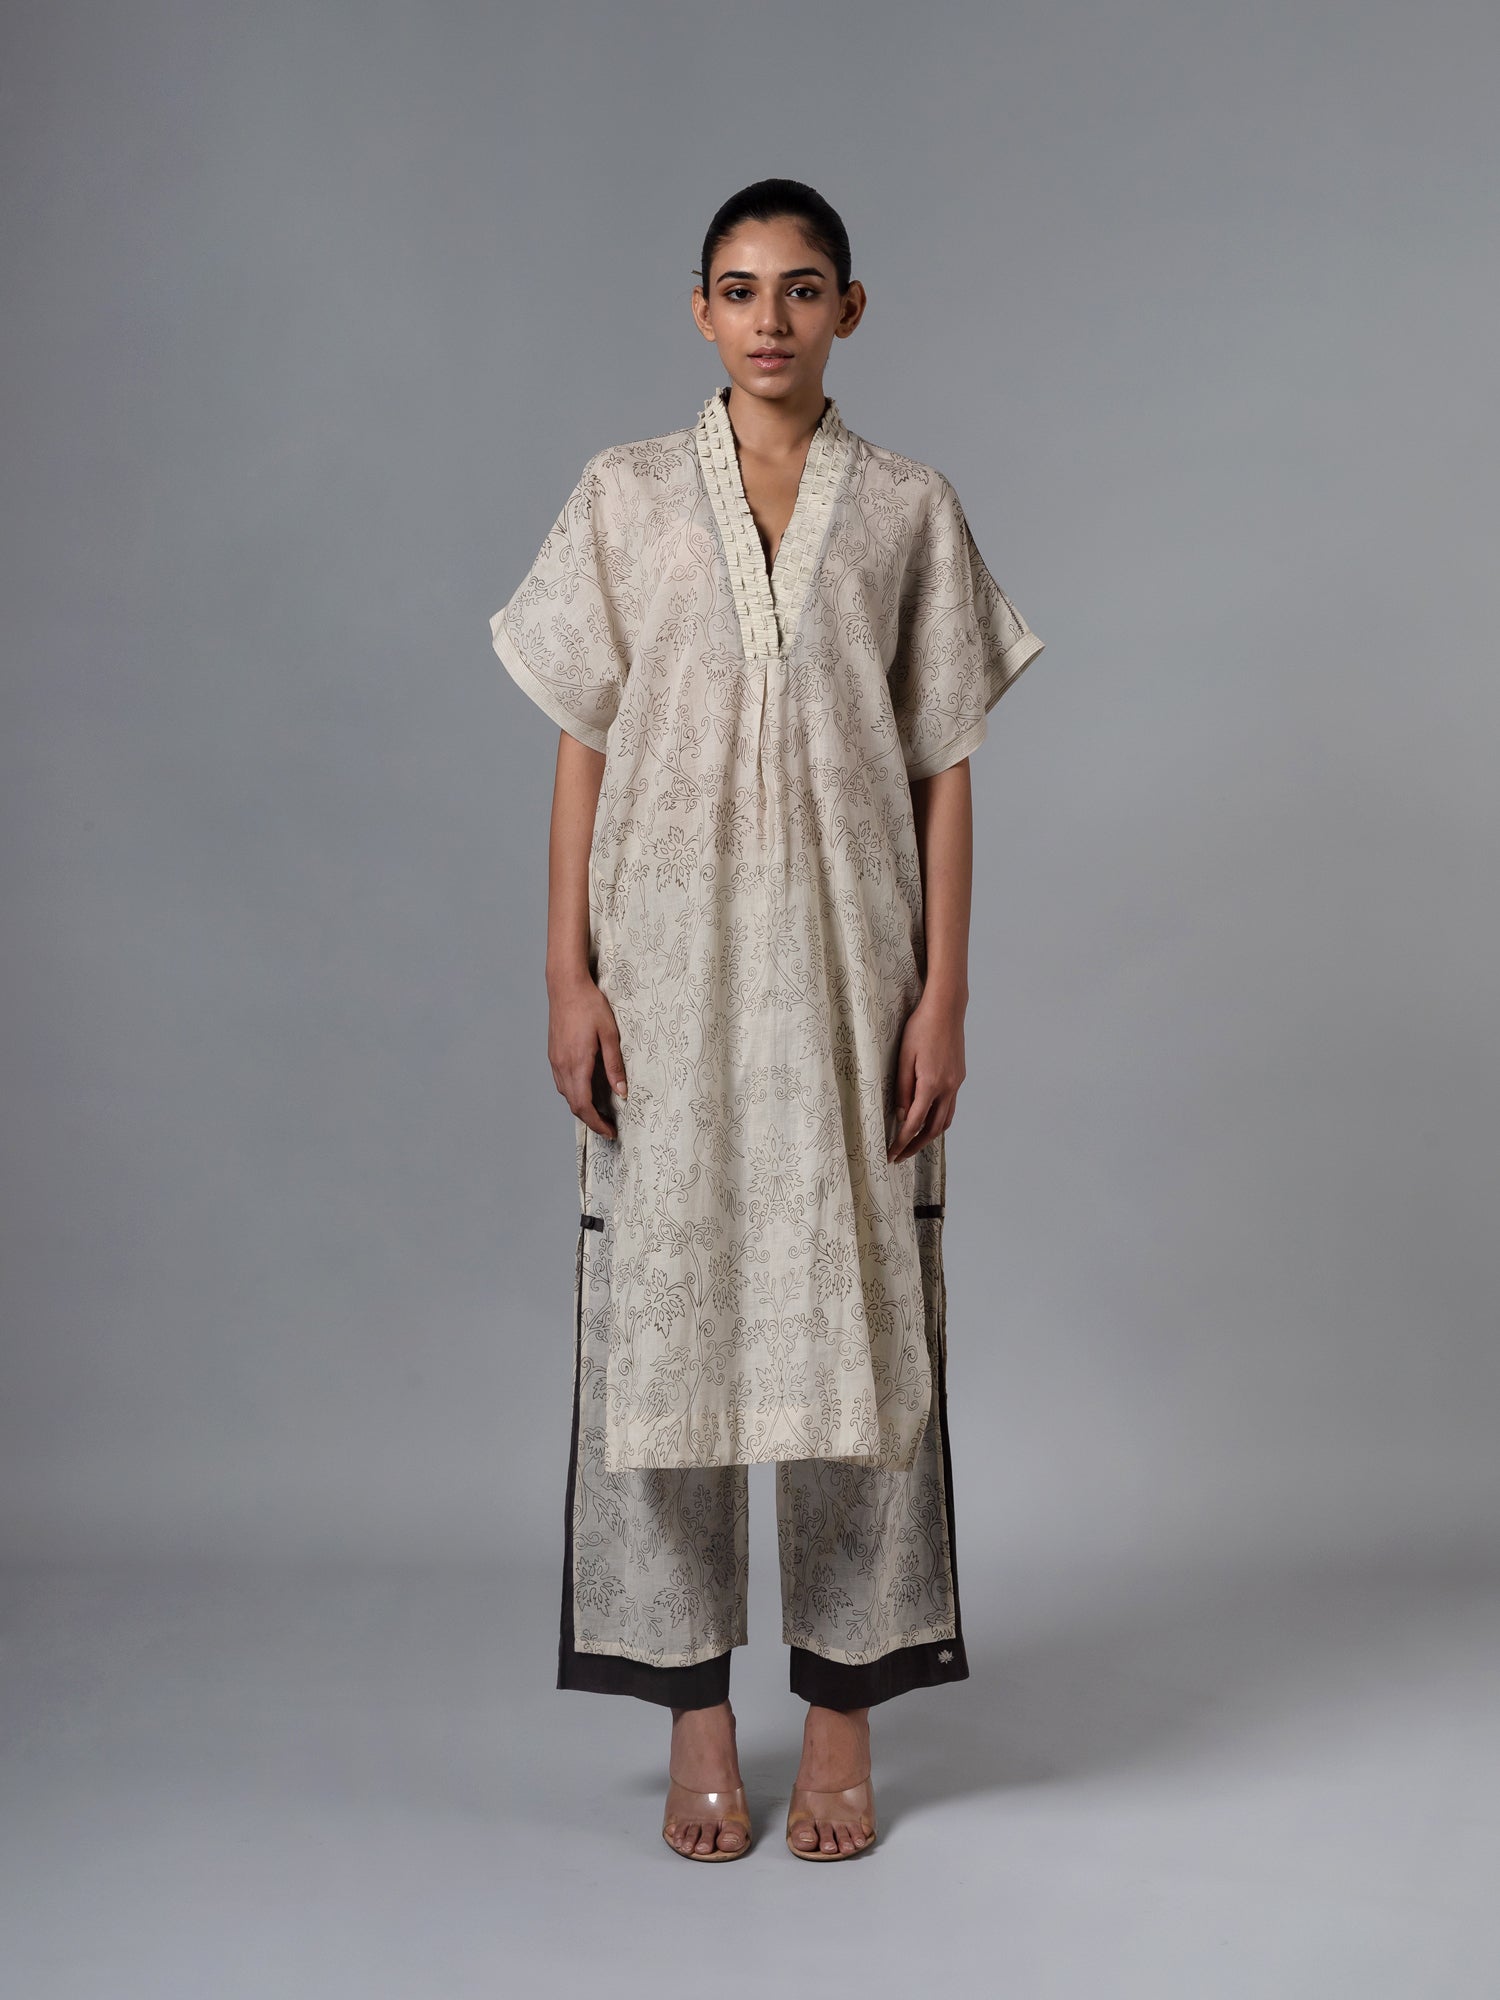 Mehtab Natural Pyjama - CiceroniPyjamaShades of India